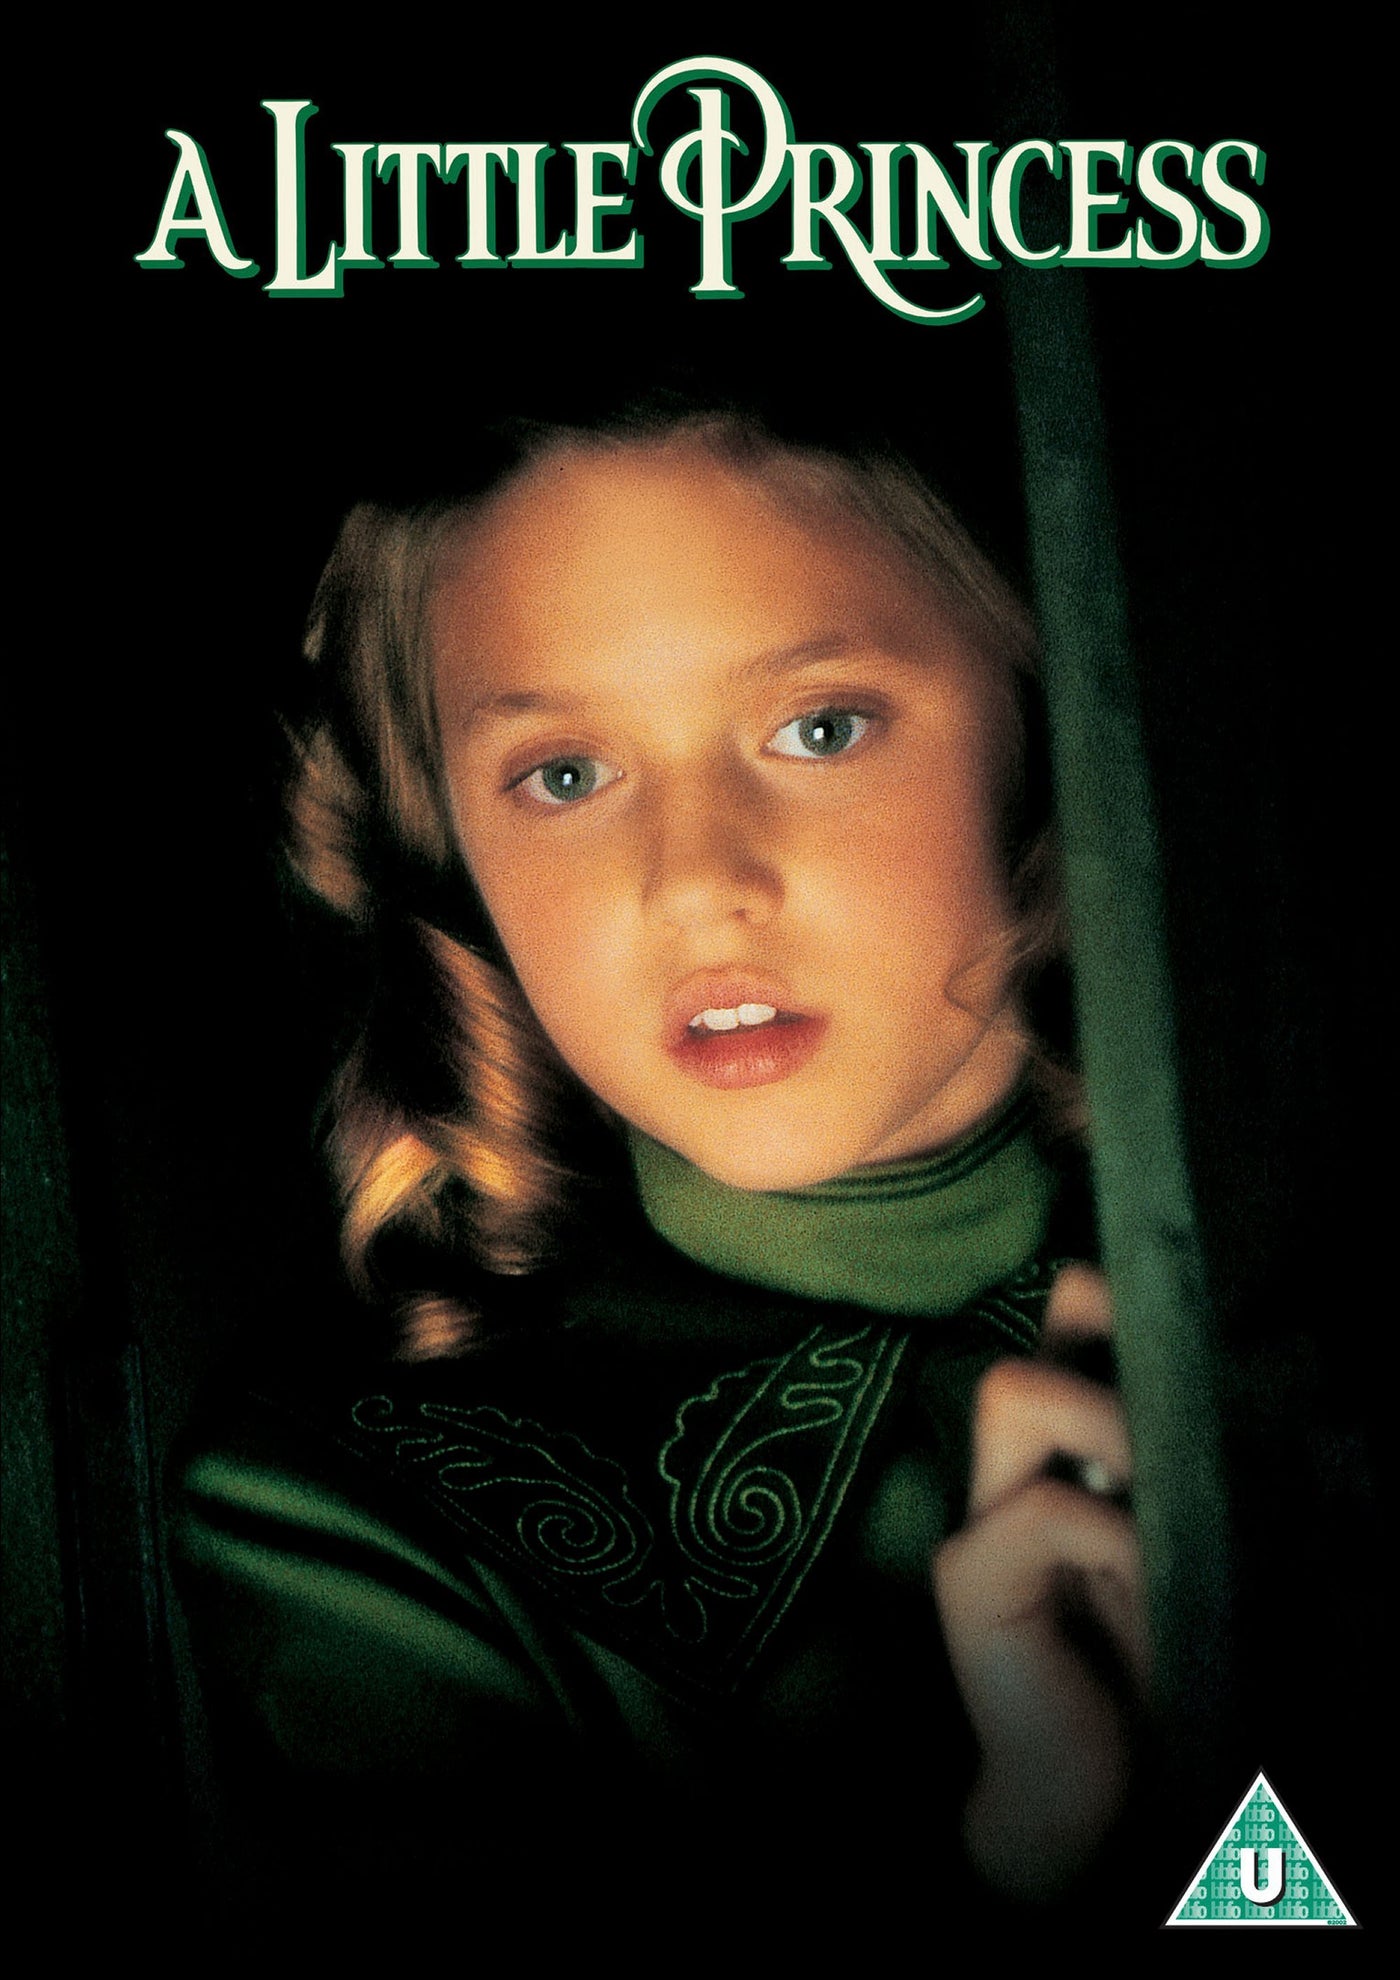 A Little Princess [1995] (DVD)